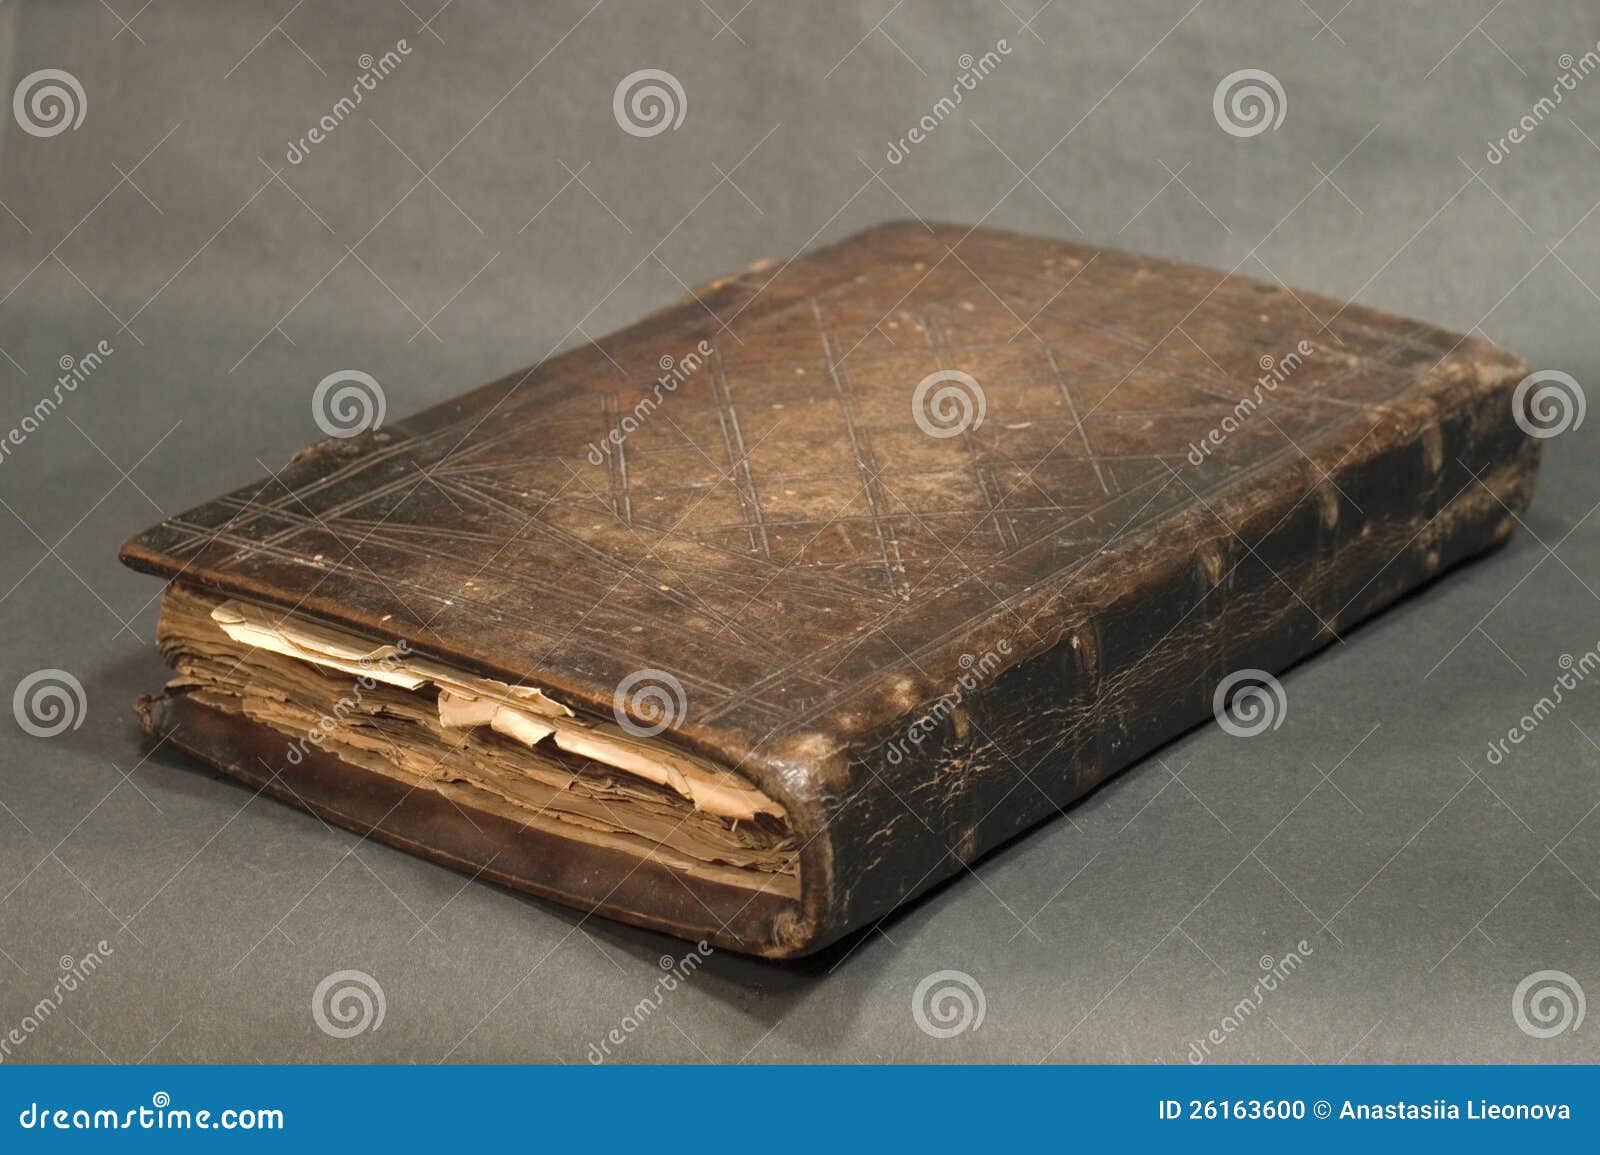 Worn book. Old book Leather Brown. Старинная книга кожа медные уголки. Старинная книга роскошь. "Старая книга лëжа".